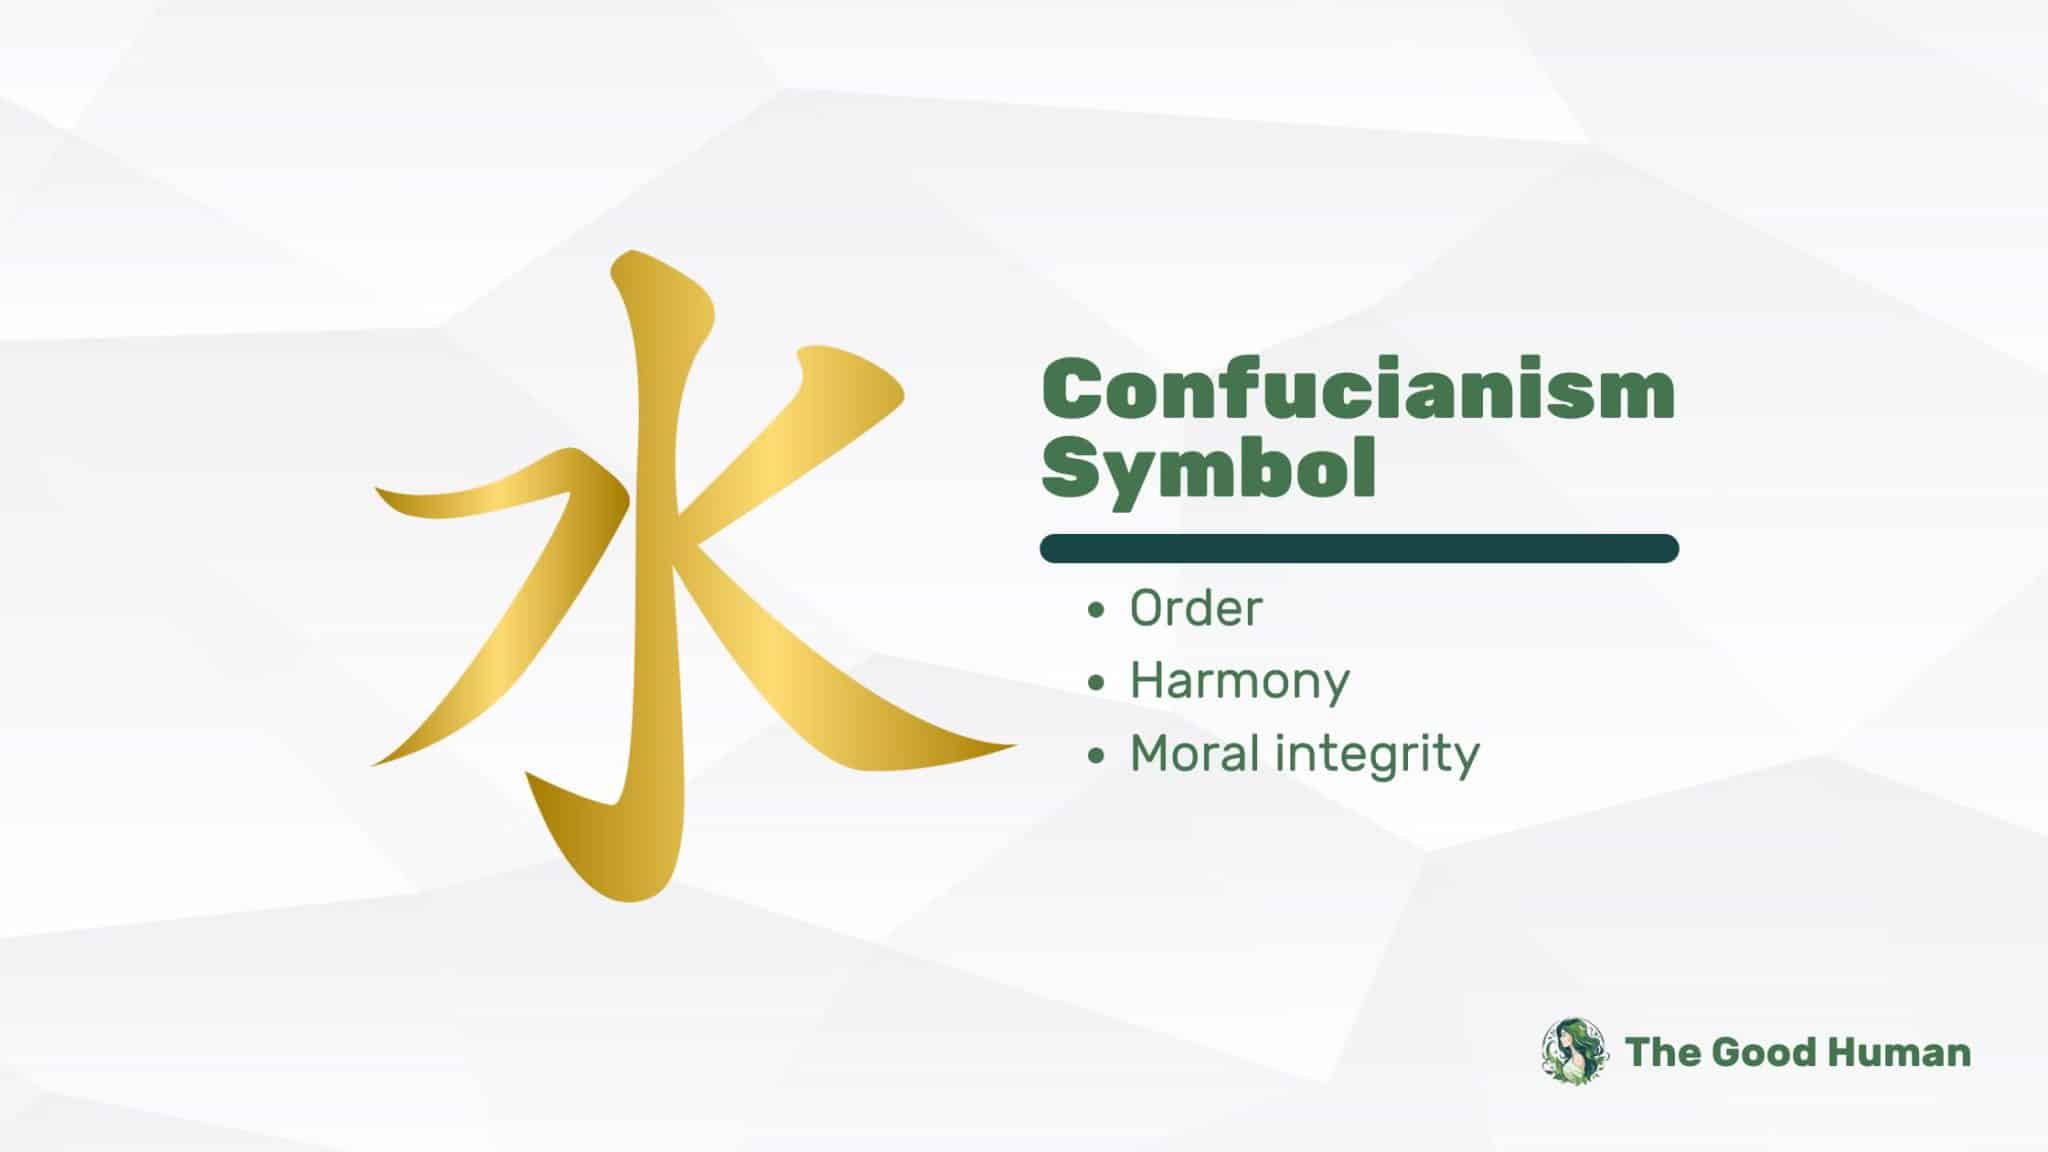 Confucianism symbol